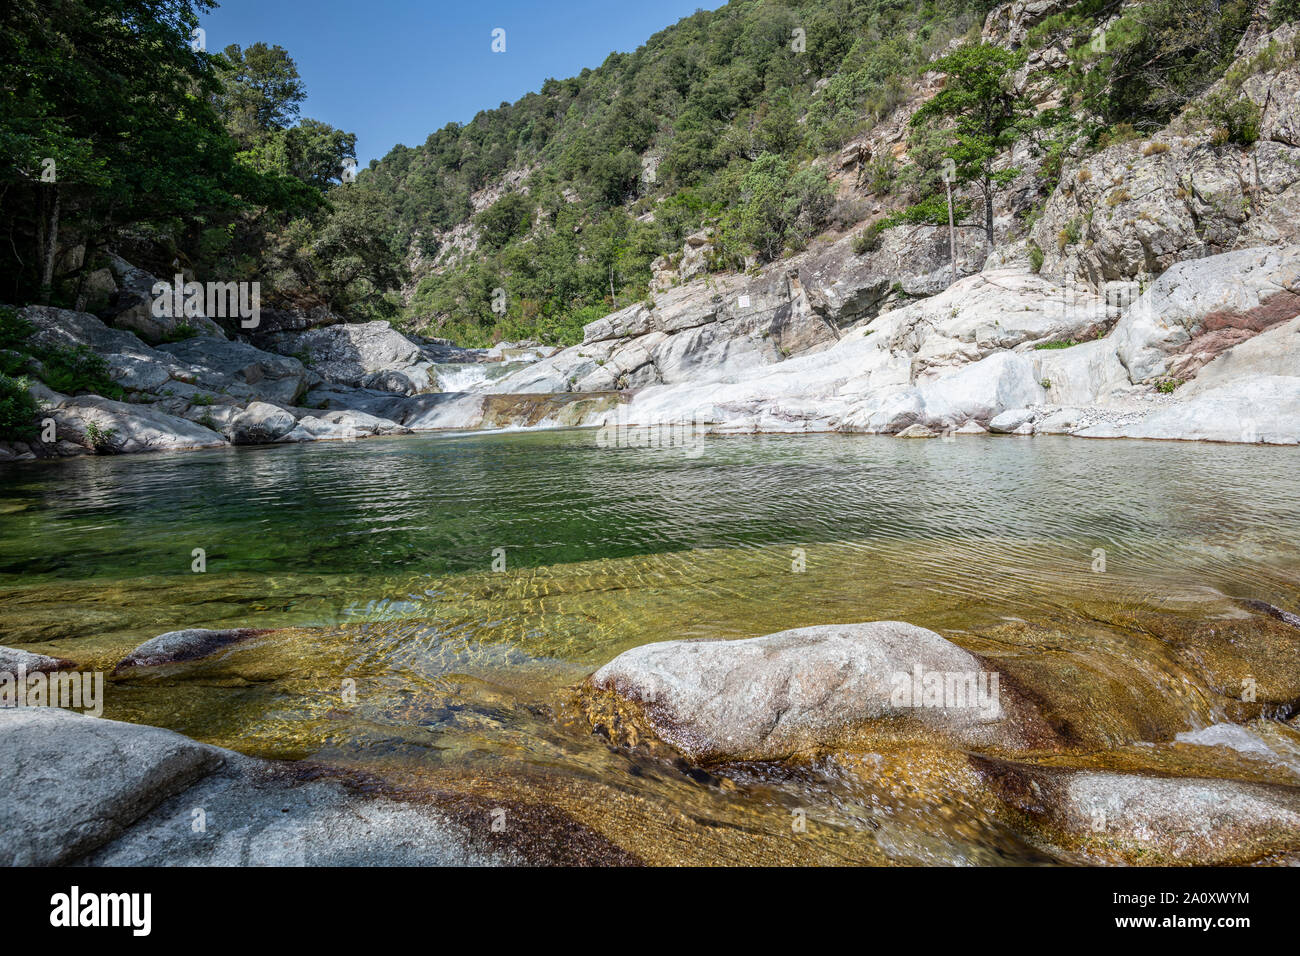 Río con piscinas naturales y bosques de Travu valle. Chisà, Córcega, Francia Foto de stock